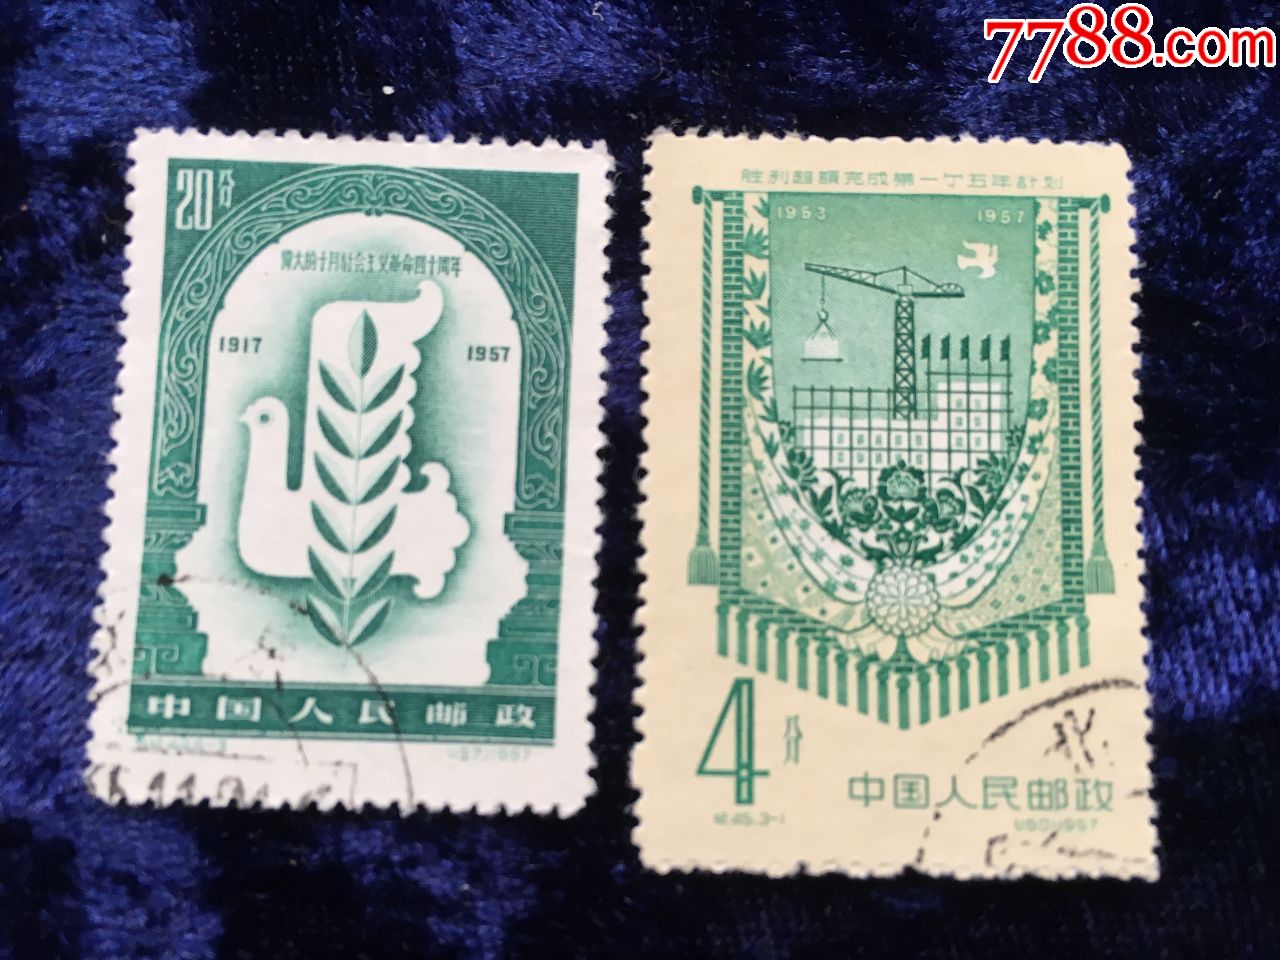 1957年中国人民邮政发行面值4分,20分邮票两枚信销票